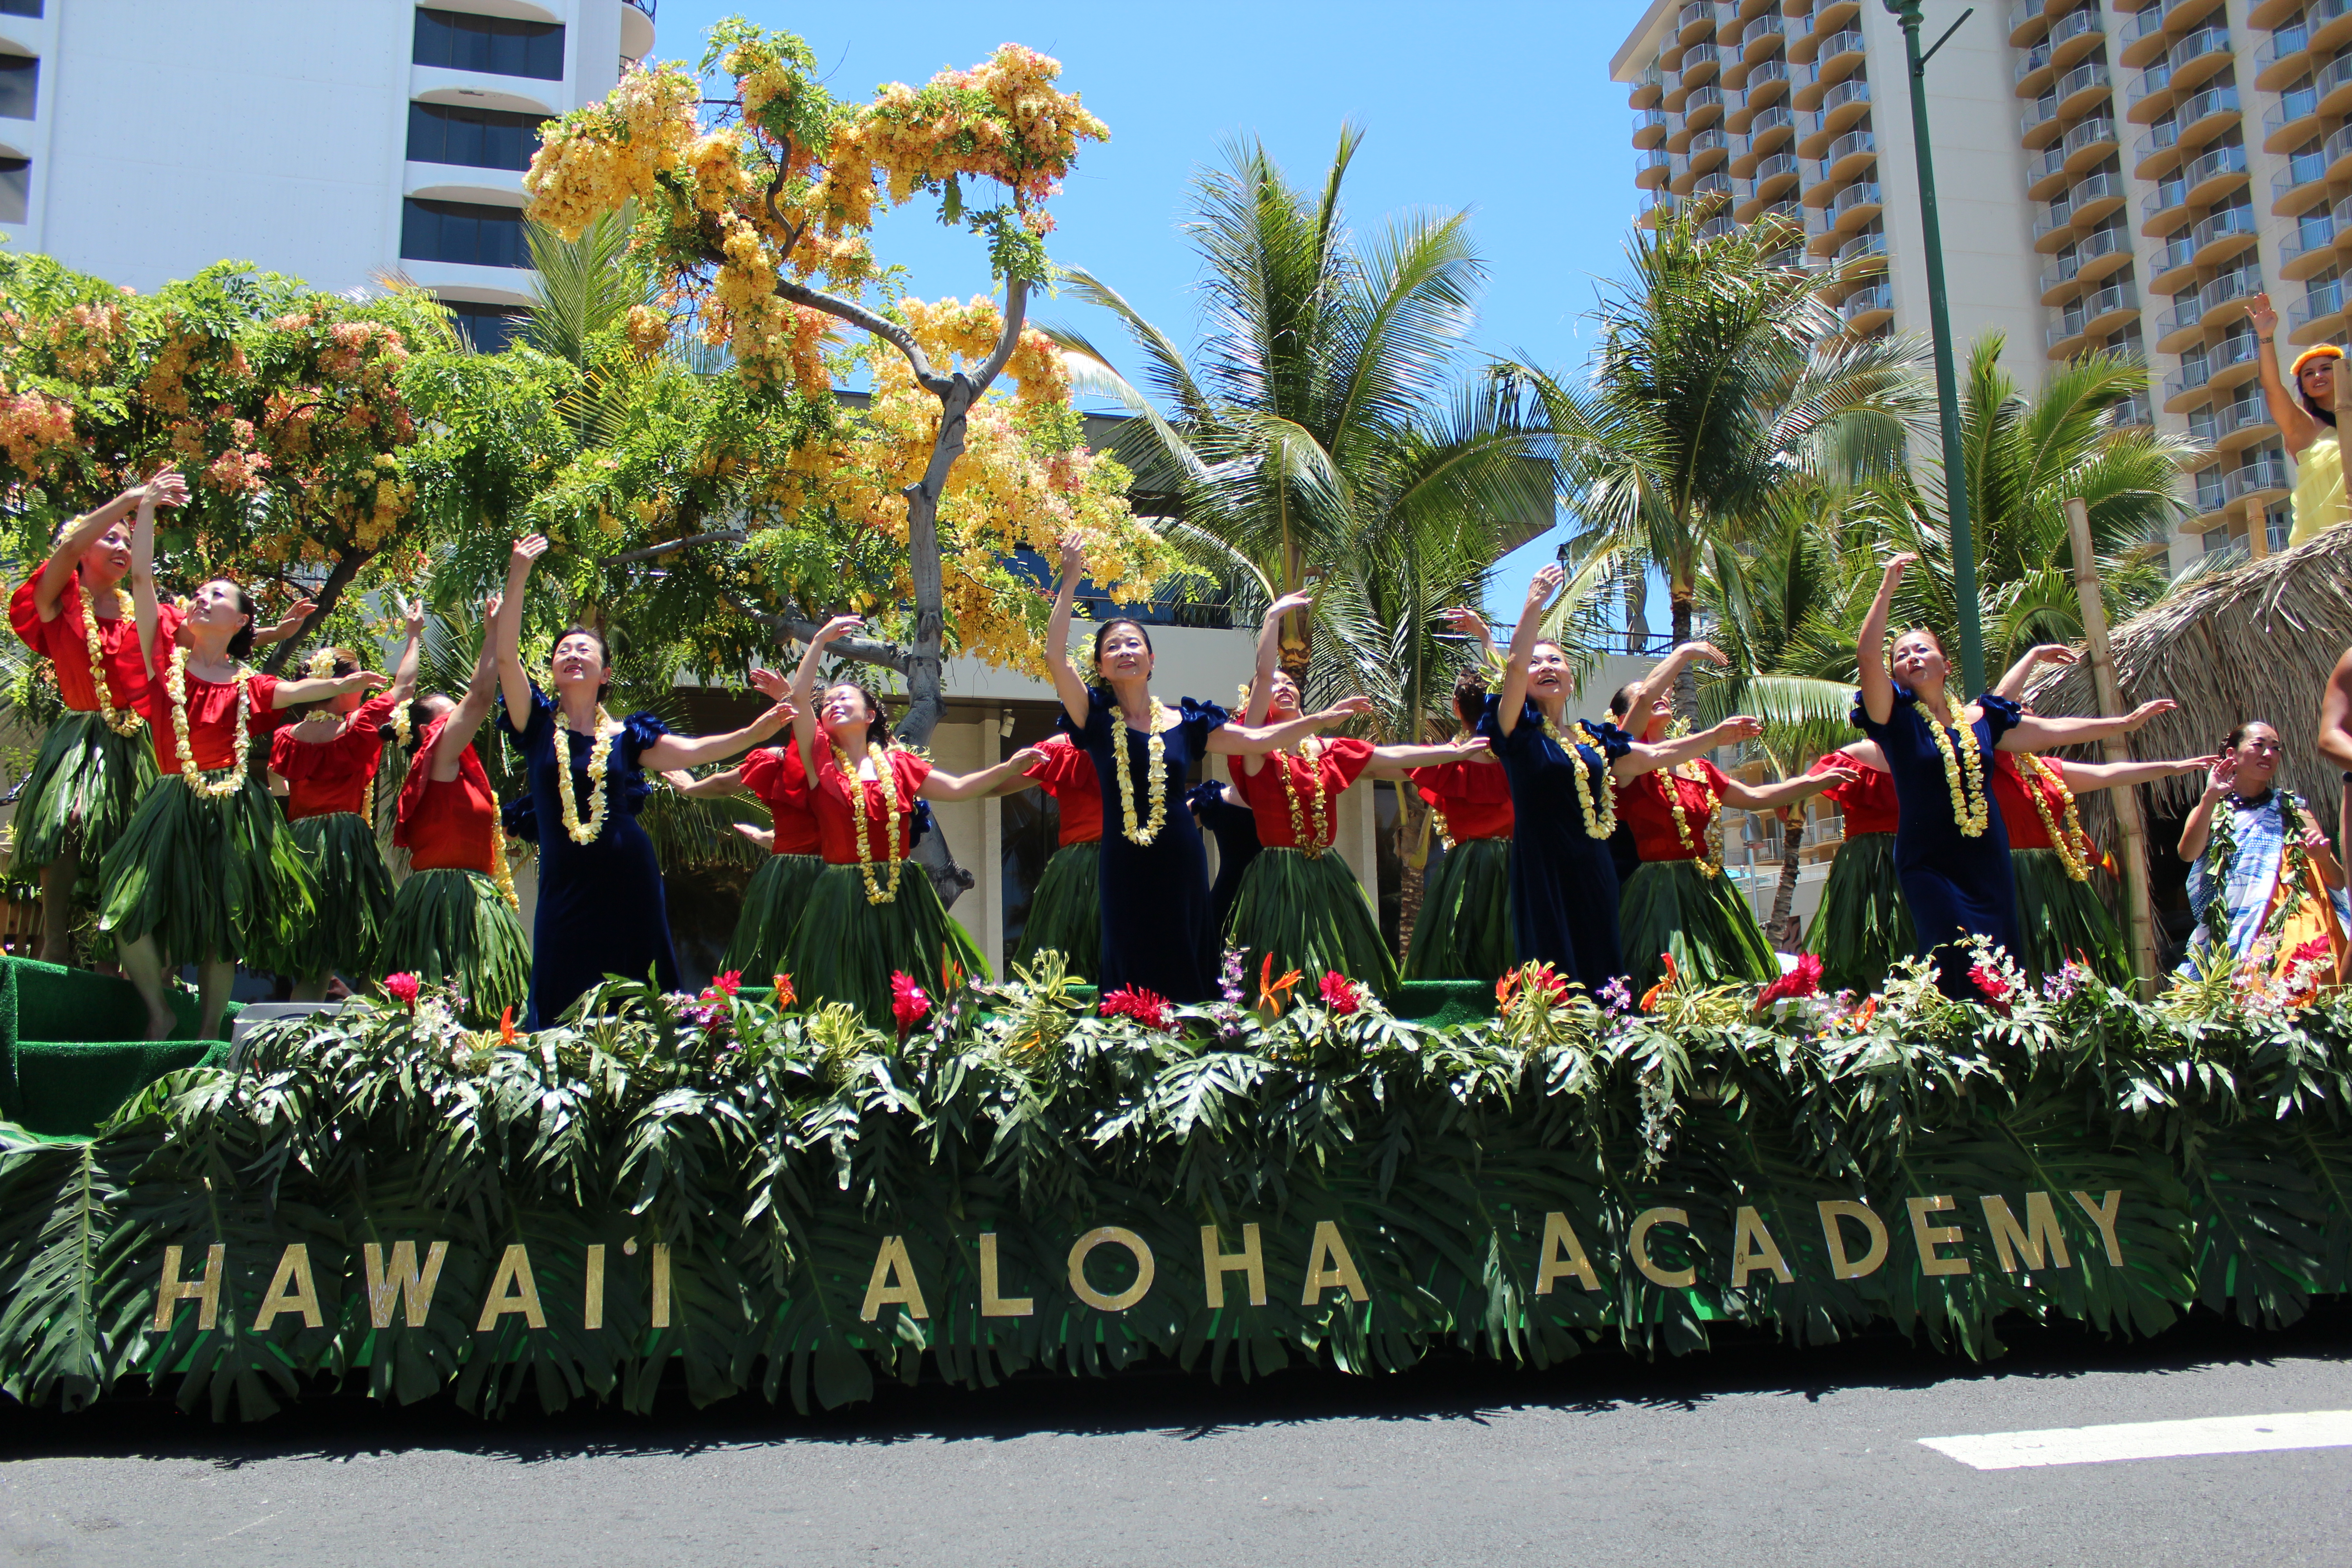 Parade in Waikiki, Hawaii